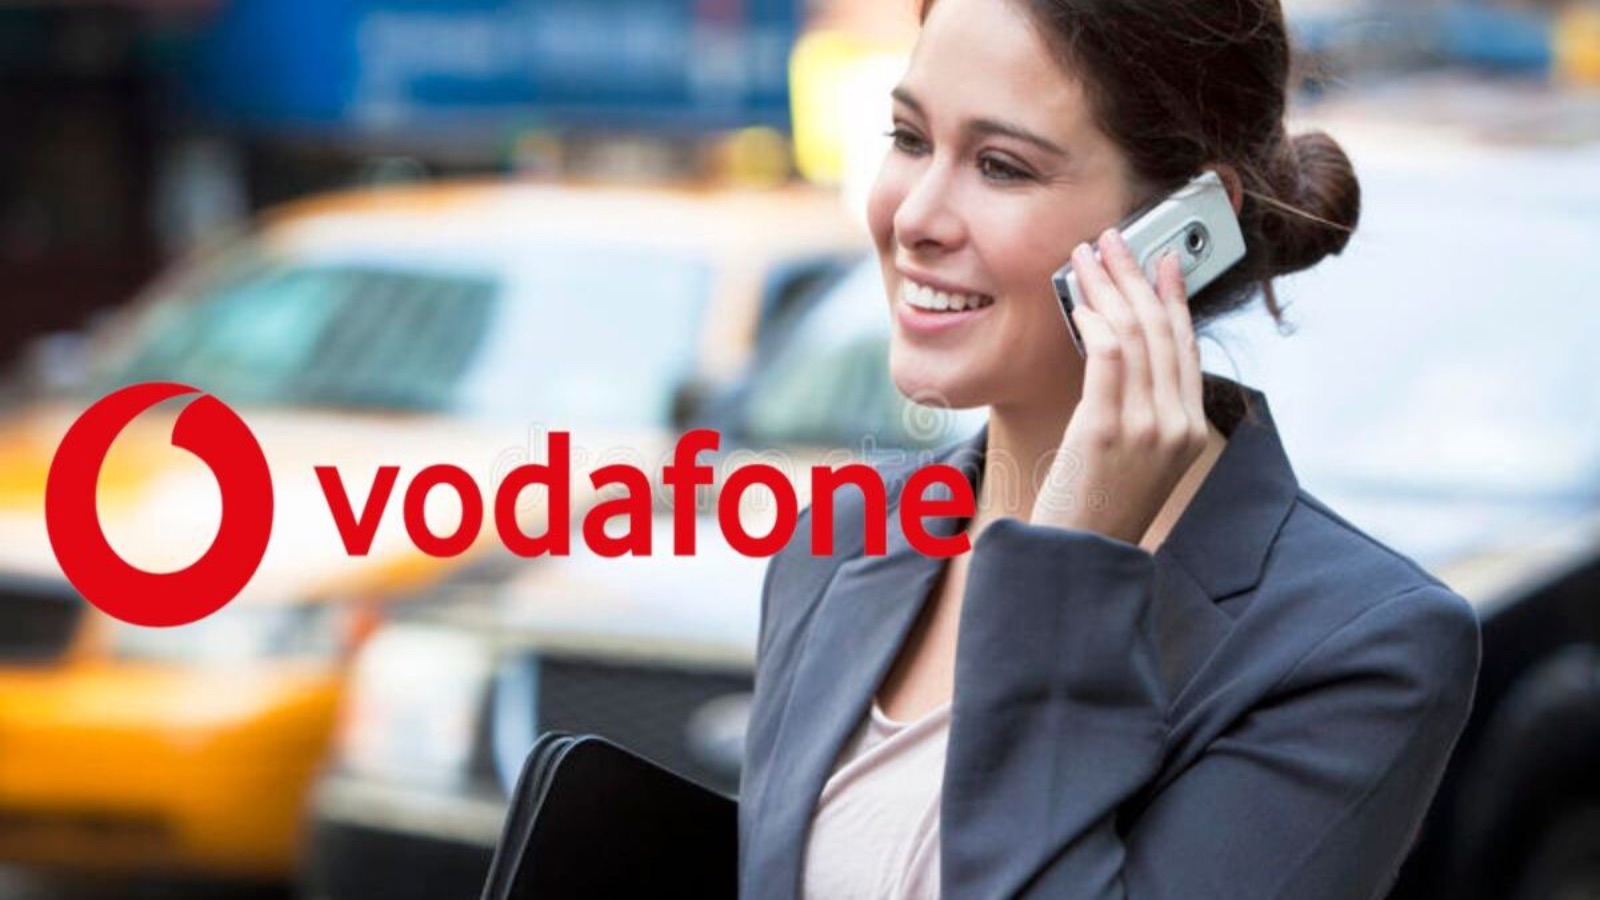 Vodafone ha le SILVER da 150 GIGA al mese, ecco i prezzi mensili